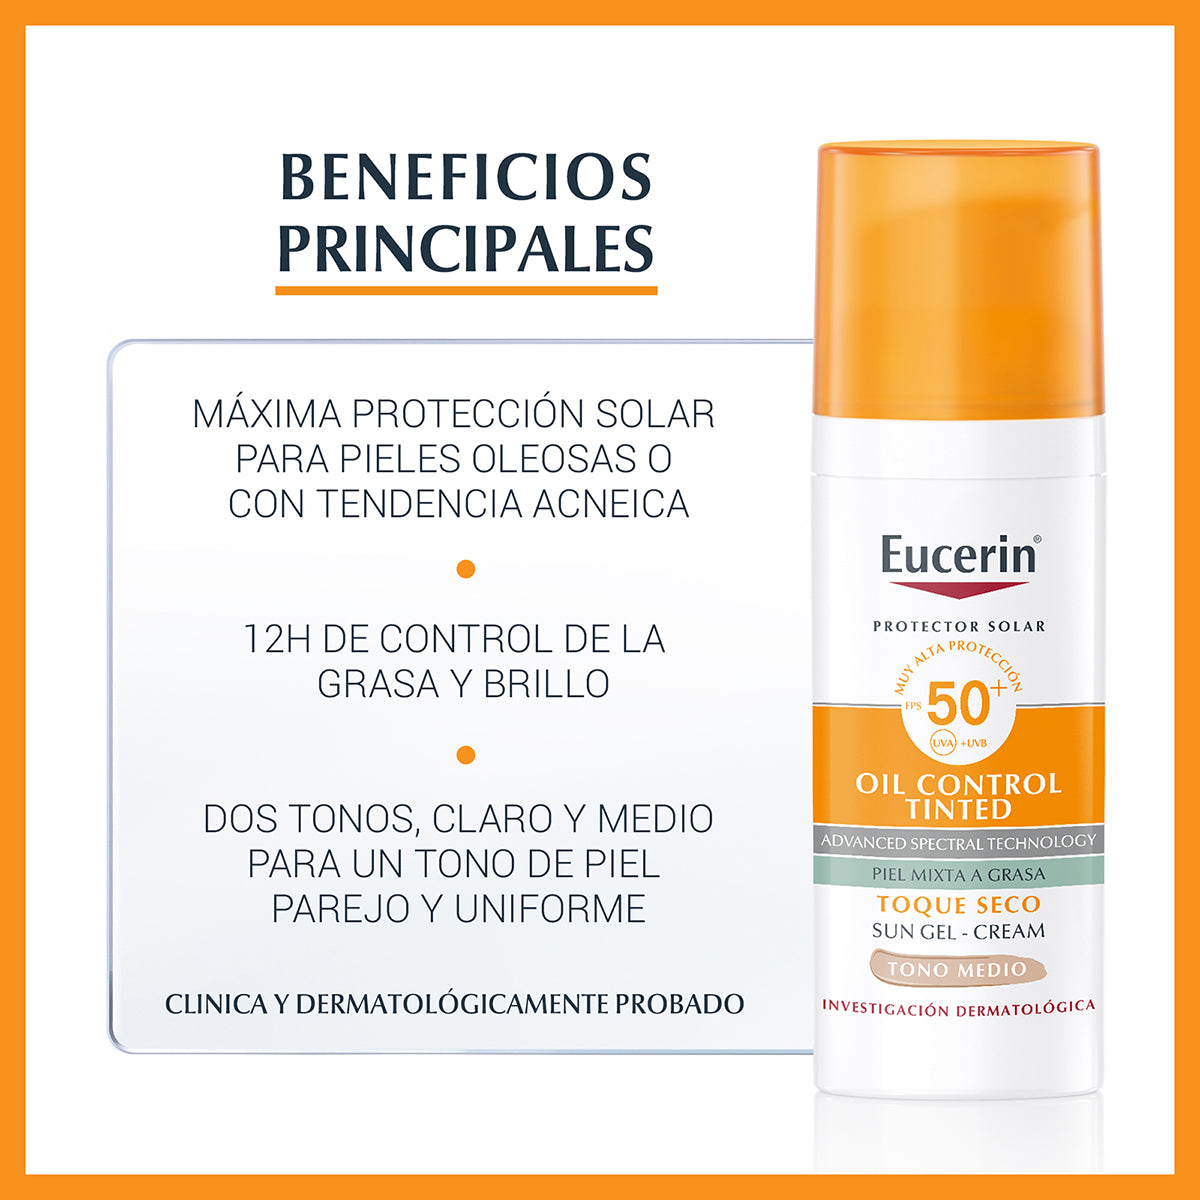 Eucerin sun oil control tinted protector solar facial tono medio FPS50+ 50ml.